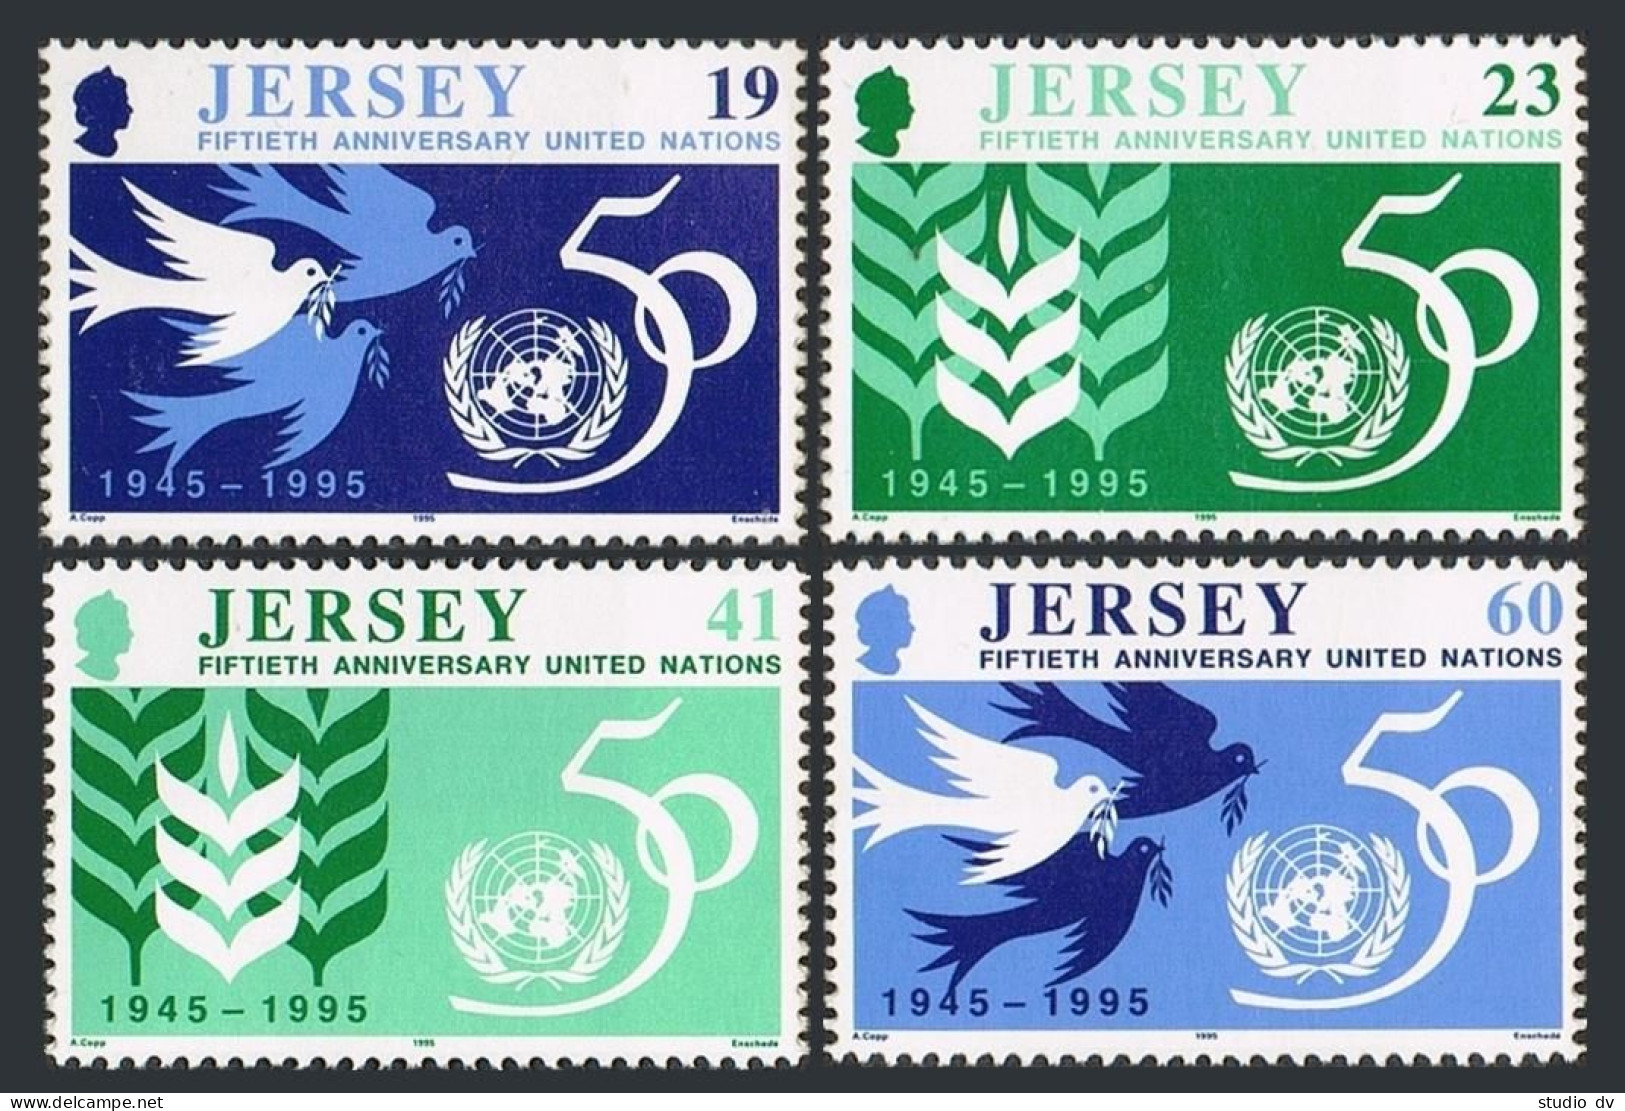 Jersey 736-739,MNH.Michel 719-722. UN,50th Ann.1995.Doves,Wheat Ear,emblem. - Jersey